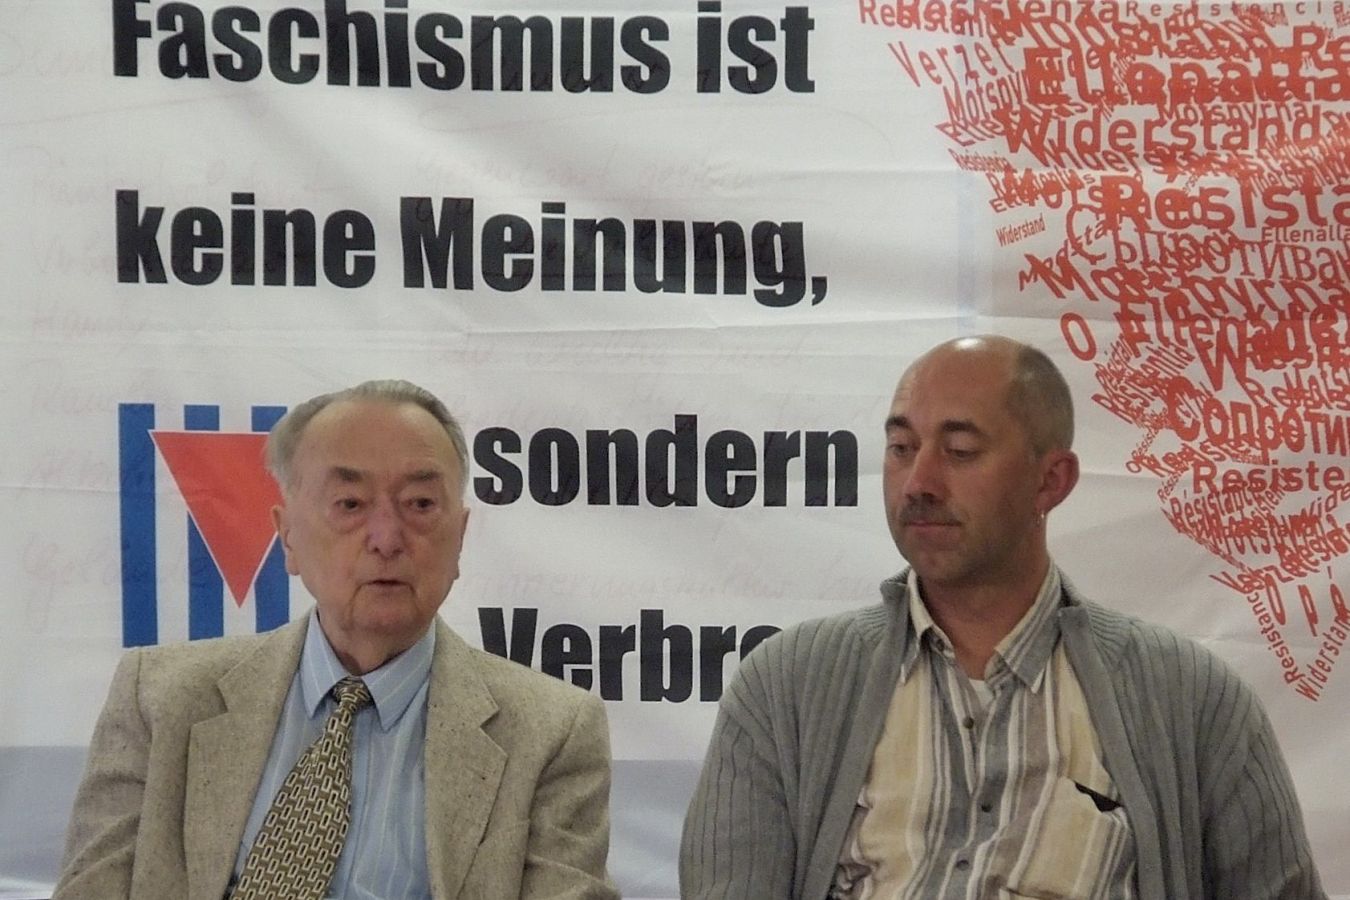 Seminar Buchenwald 11.-16.9.2011, Henz Koch, der erste Leiter der Gedenkstätte Buchenwald <i>Bild Hans-Dieter Hey/R-mediabase</i> <br><a href=/confor2/?bld=64247&pst=64197&aid=14&i1=Hans-Dieter%20Hey/R-mediabase>Download Bild 64247</a>  <br><a href=/?p=64197>Zum Beitrag 64197</a>